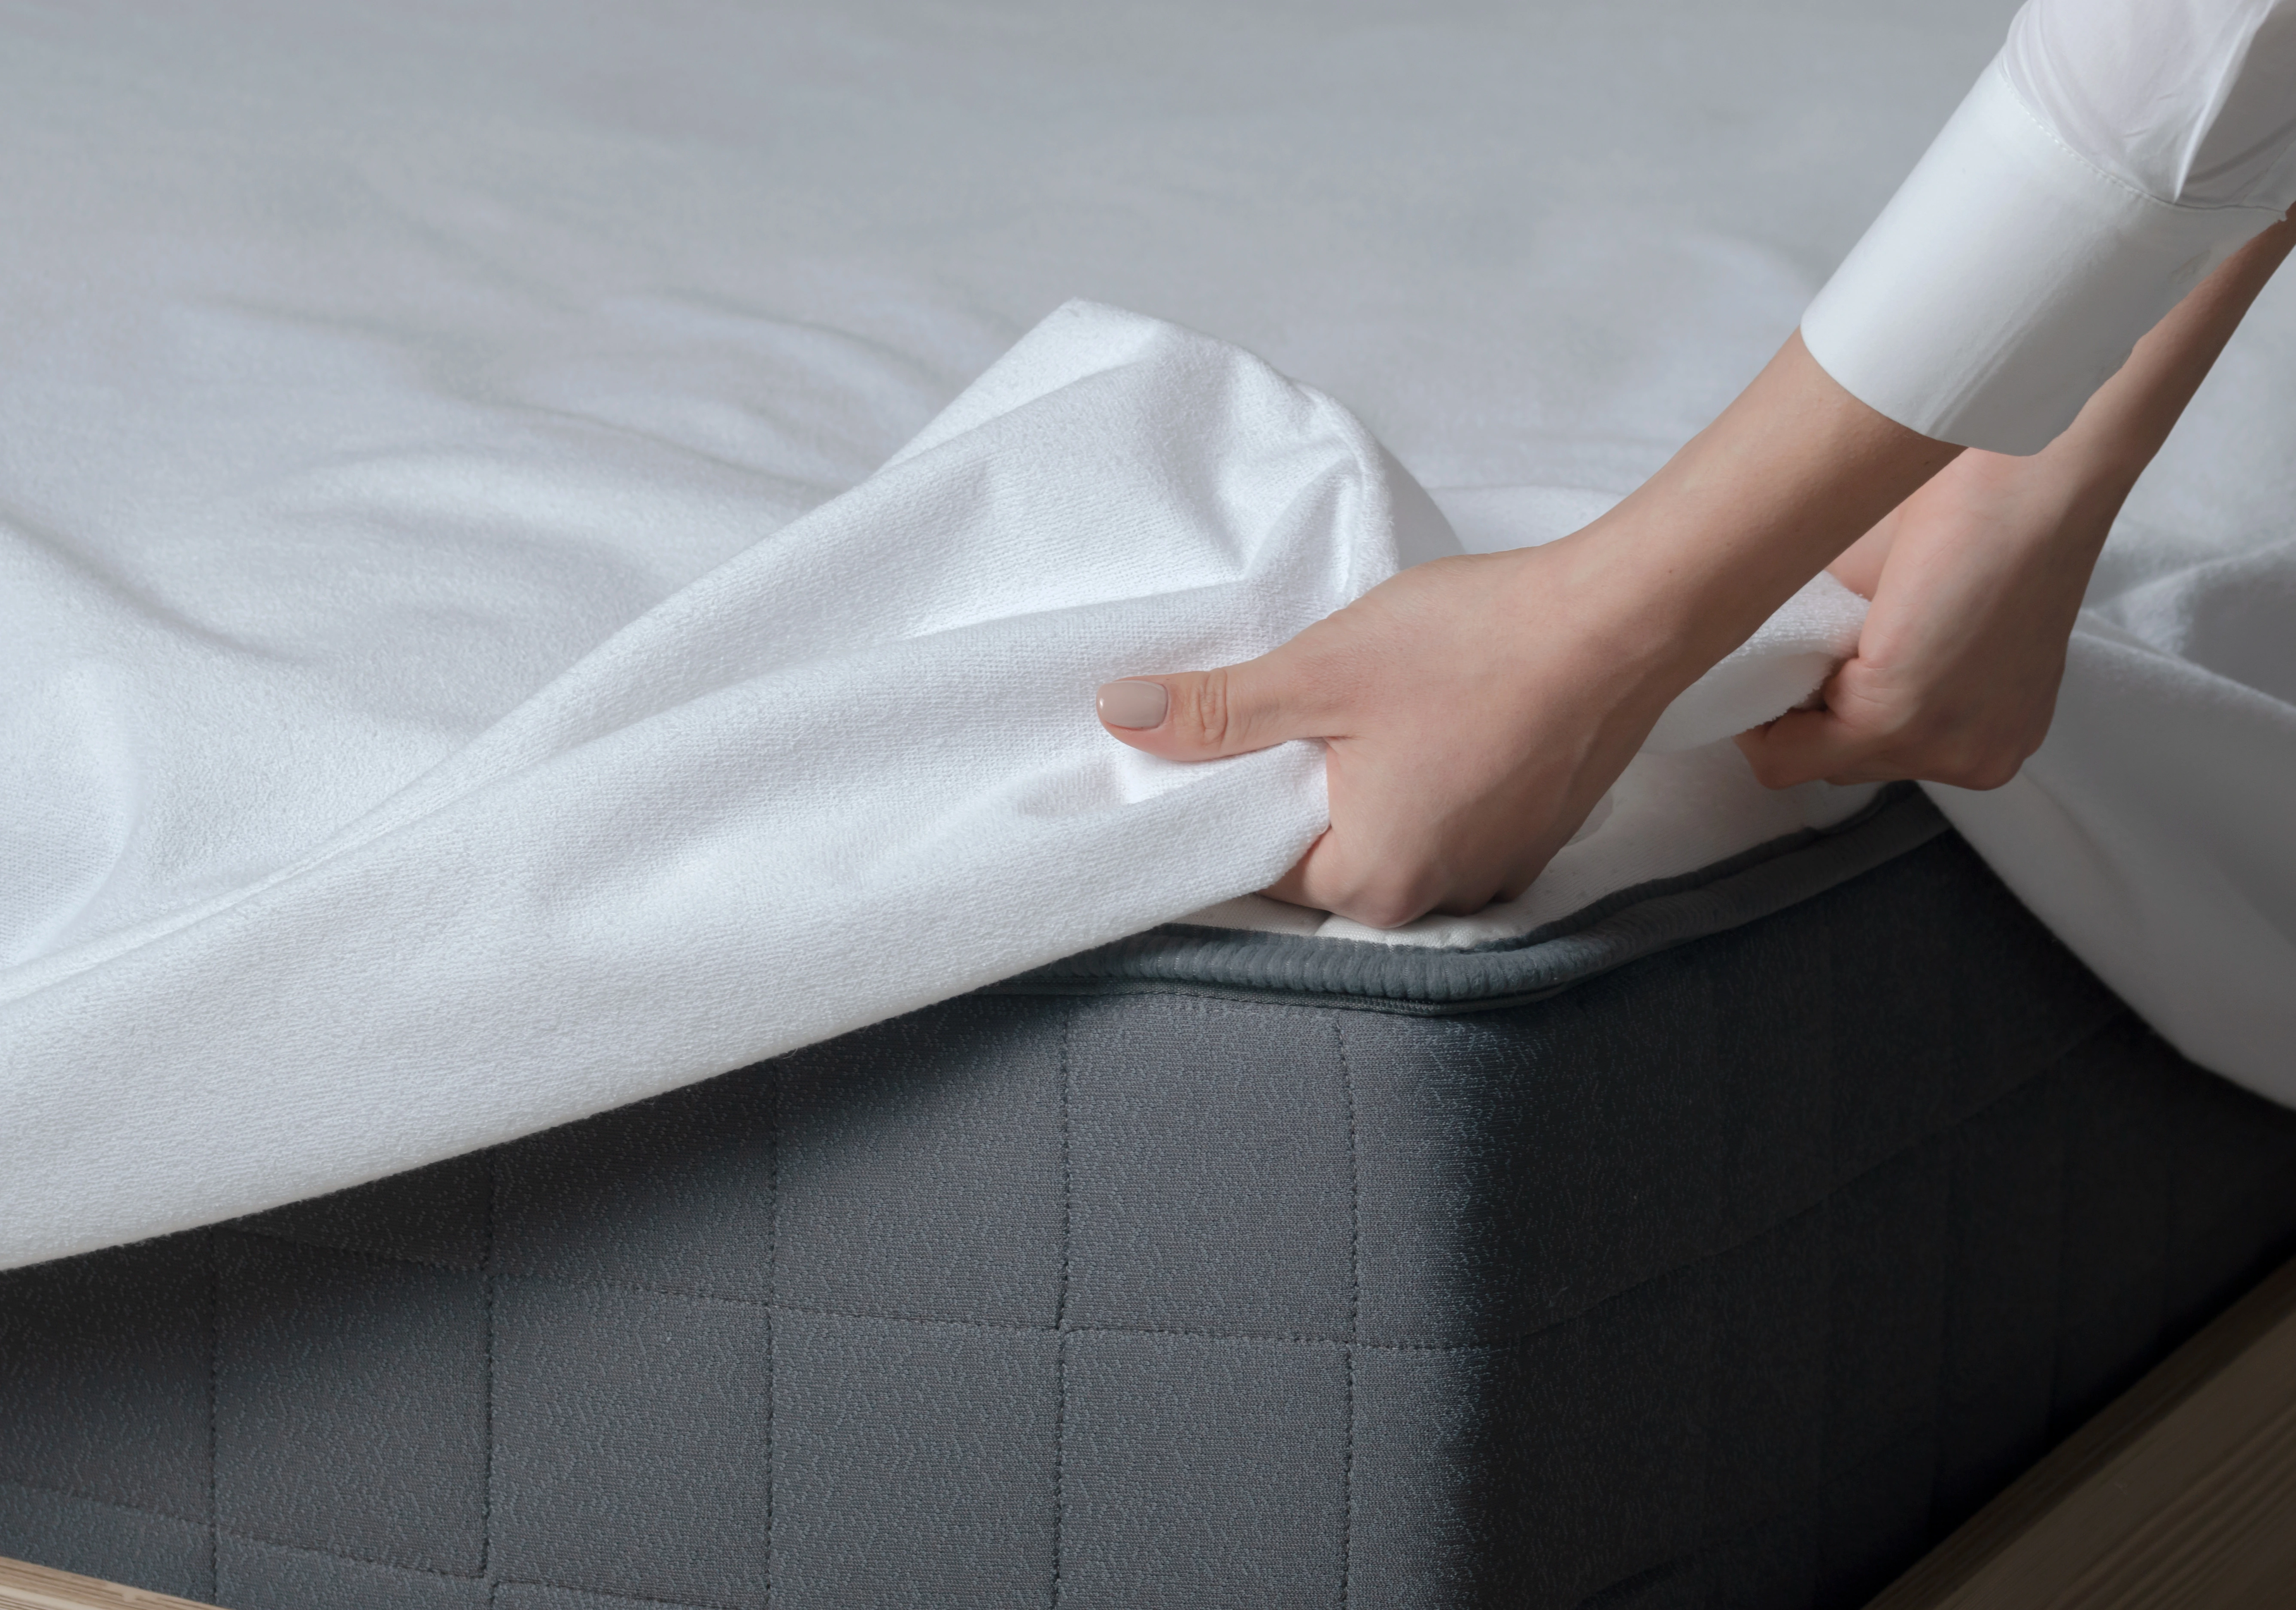 Taie d'oreiller jetable : protège et garantit une hygiène optimale